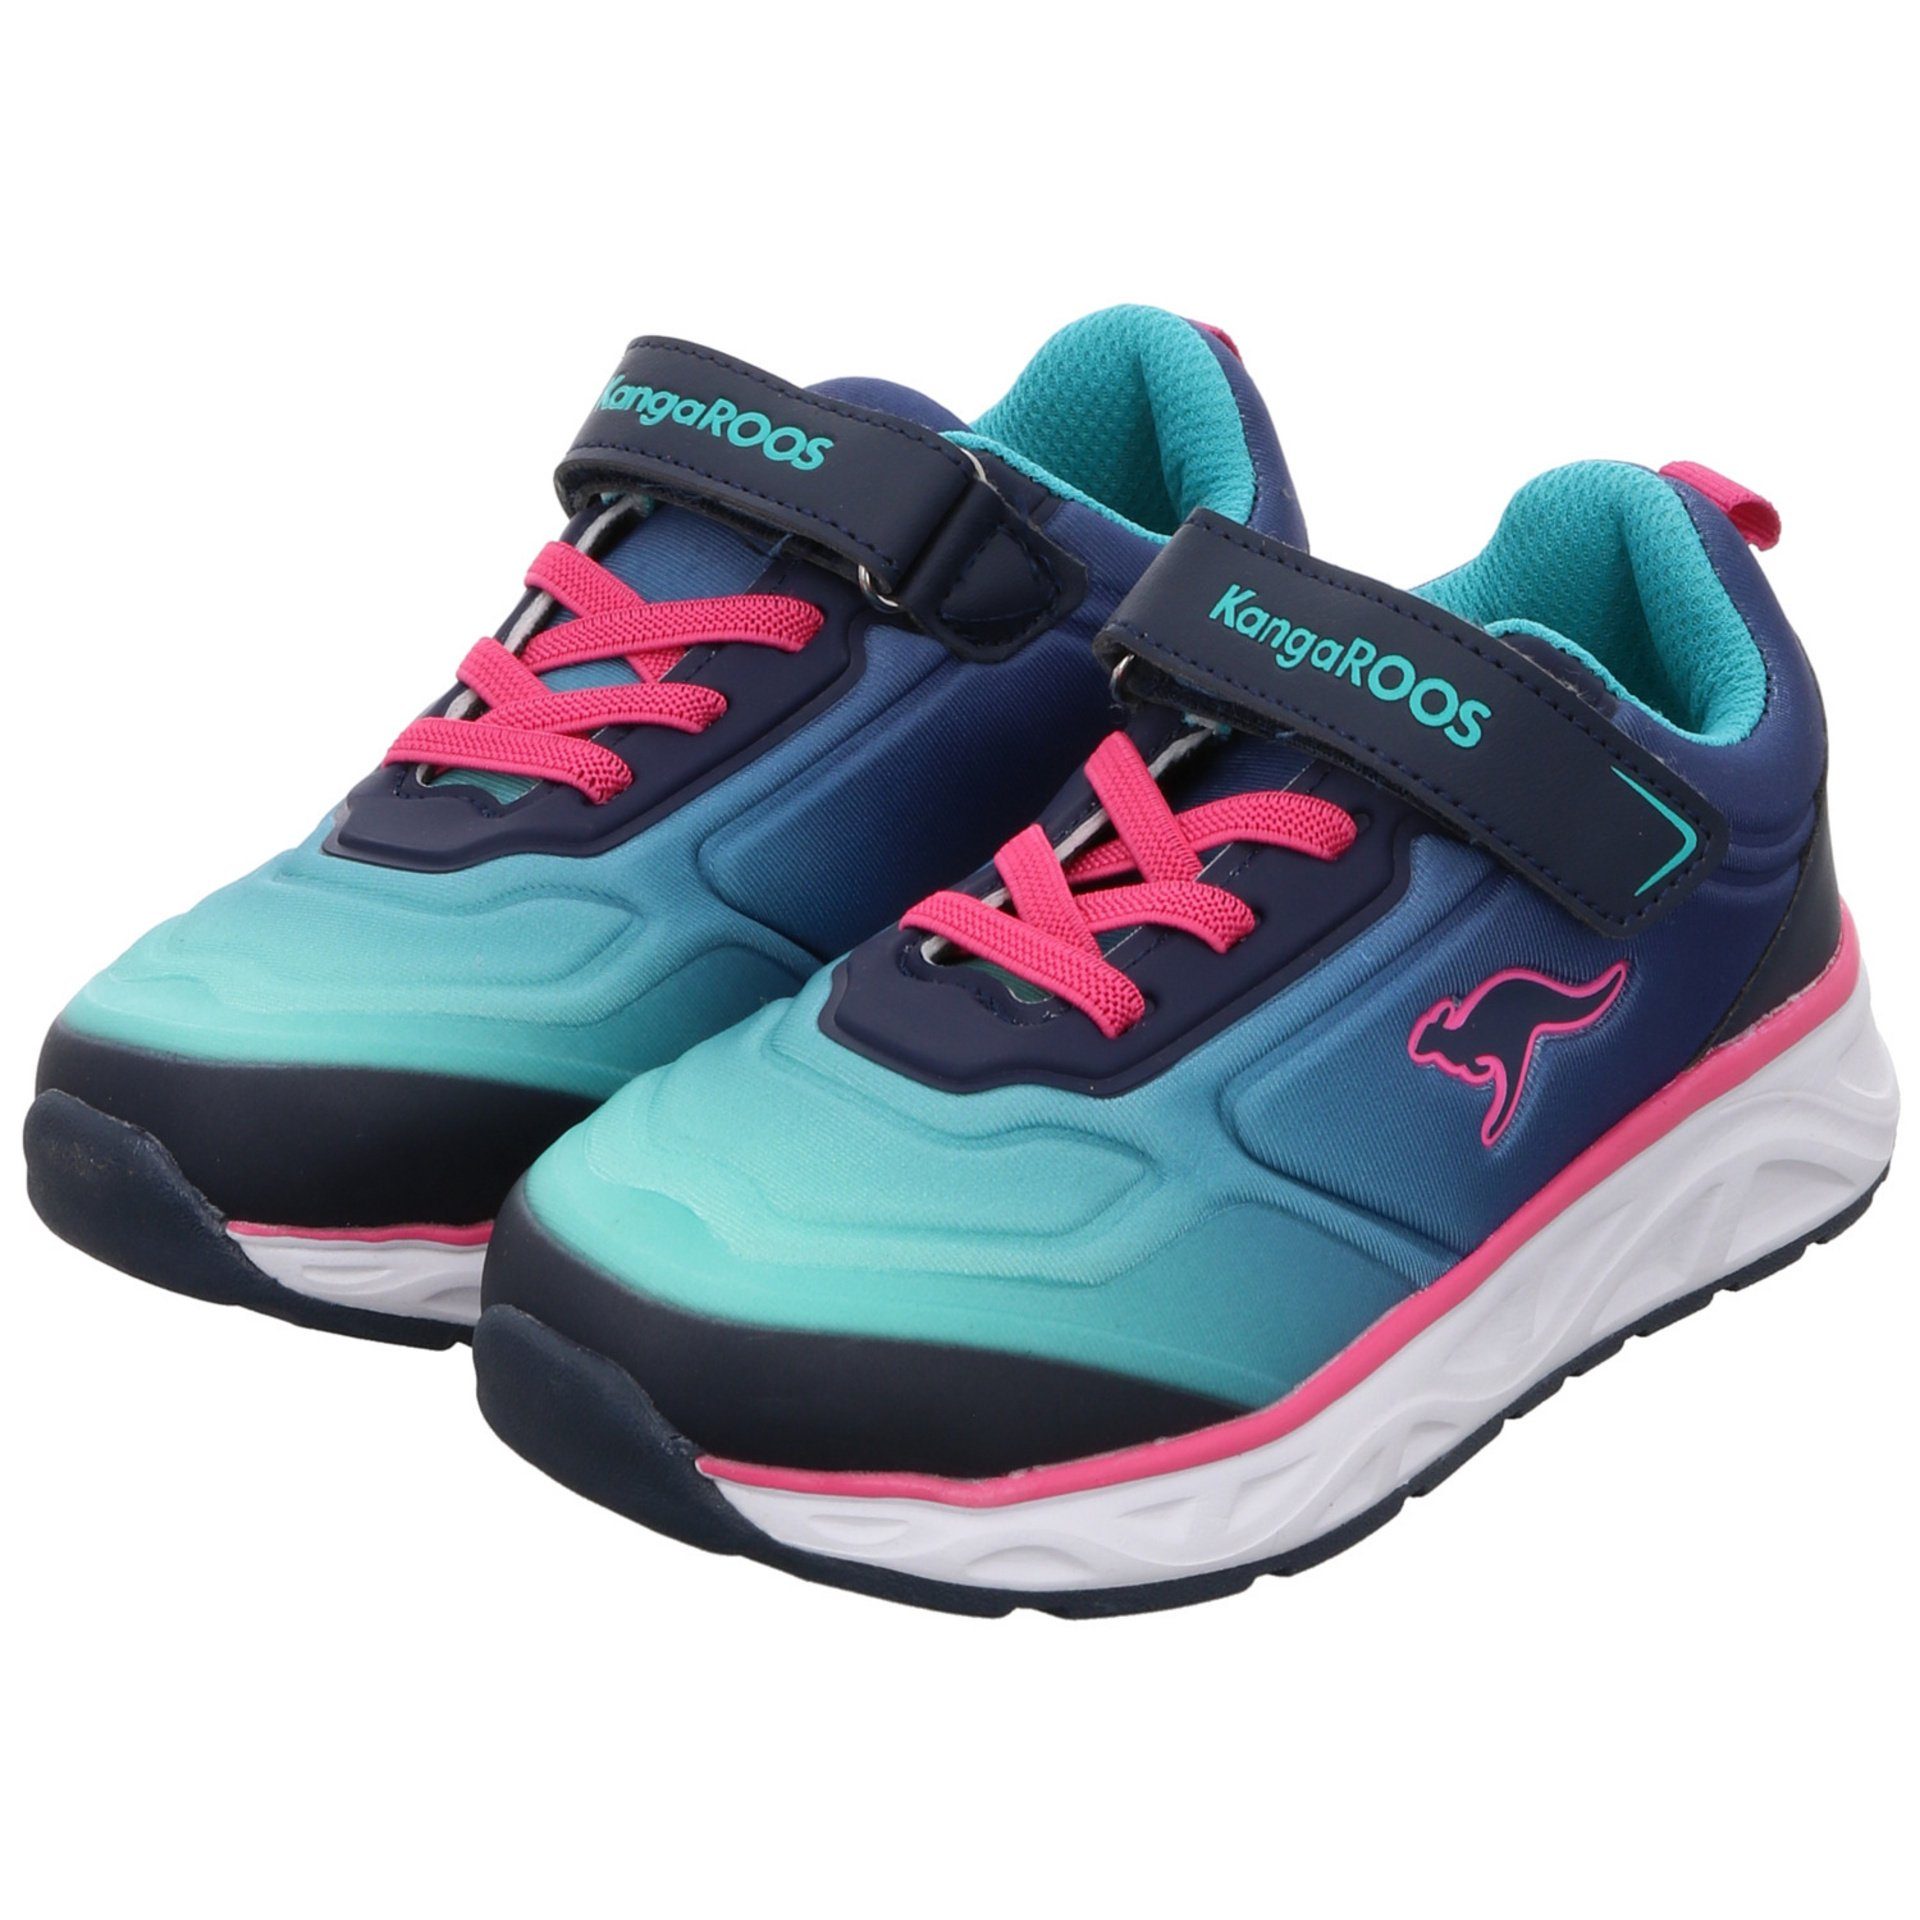 Airos K-OK KangaROOS navy/daisy/pink Sneaker Synthetikkombination Logoschriftzug Sneaker